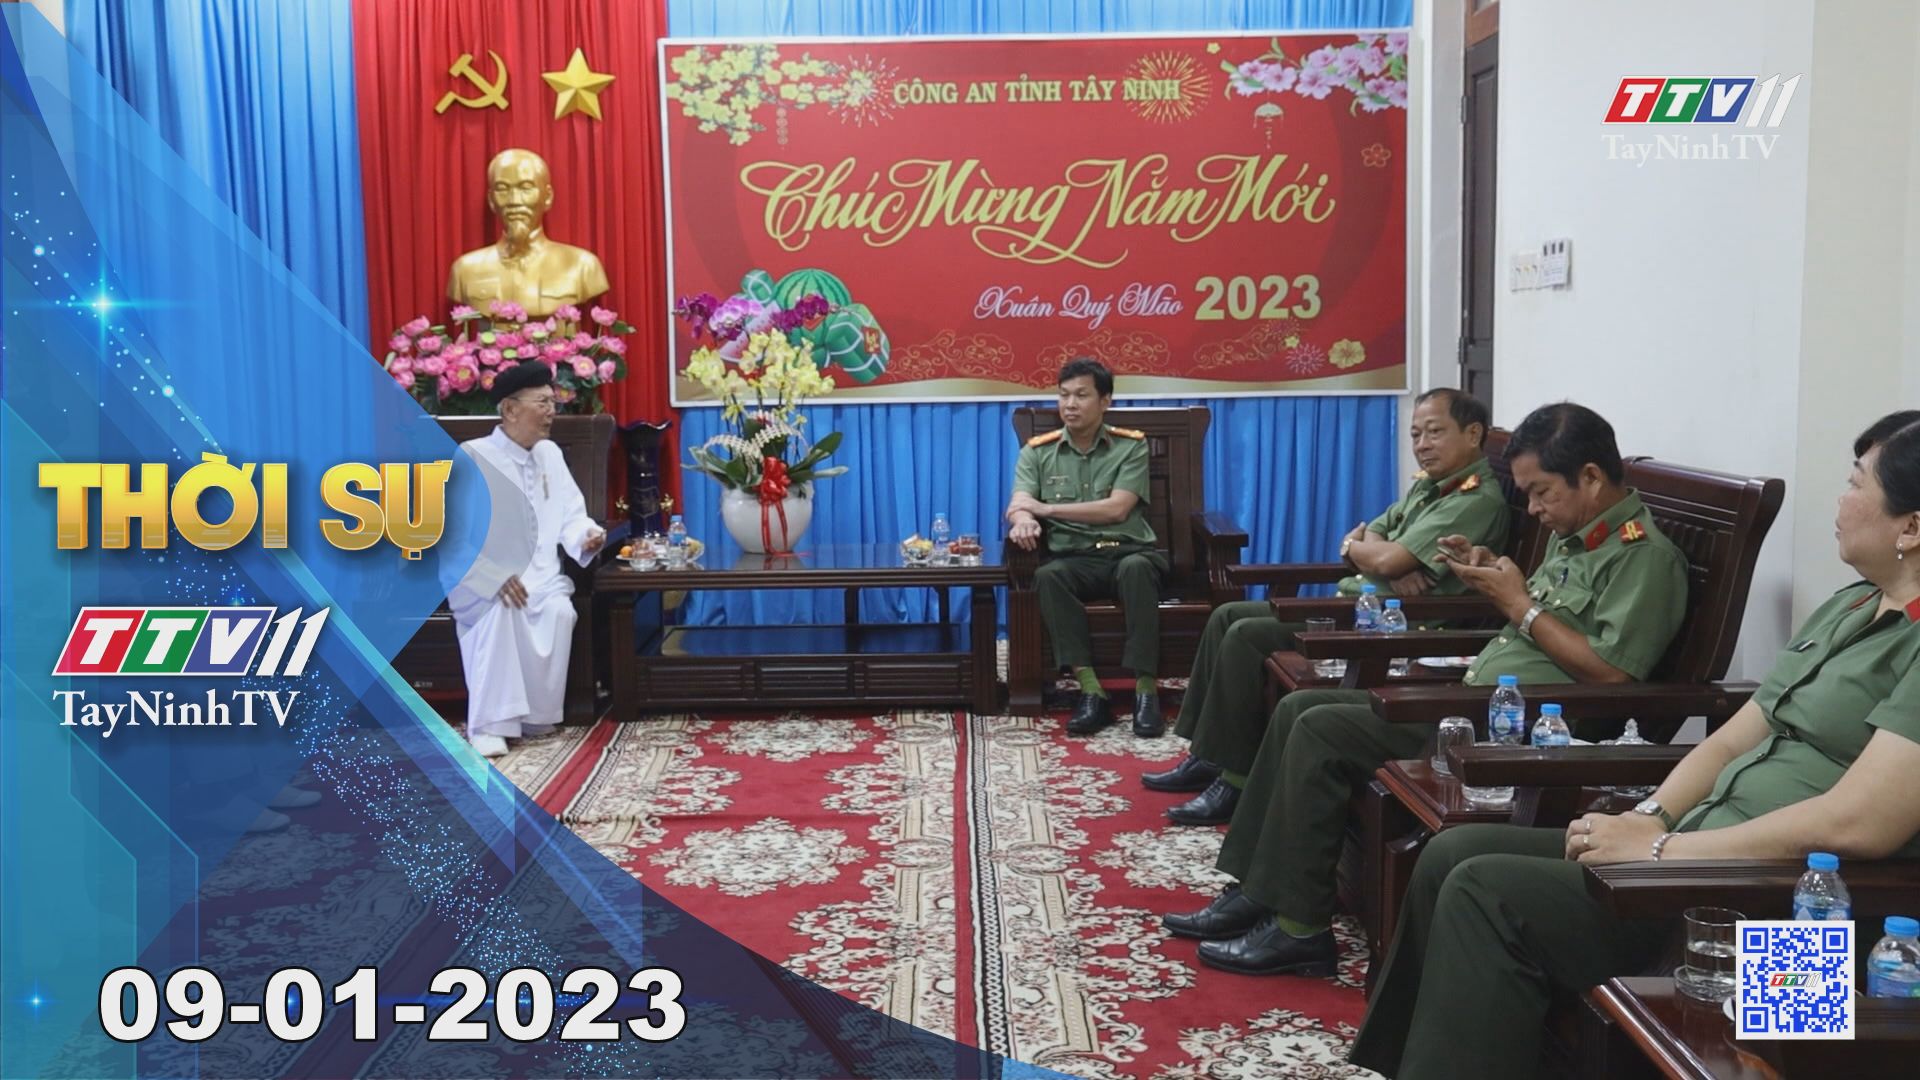 Thời sự Tây Ninh 09-01-2023 | Tin tức hôm nay | TayNinhTV